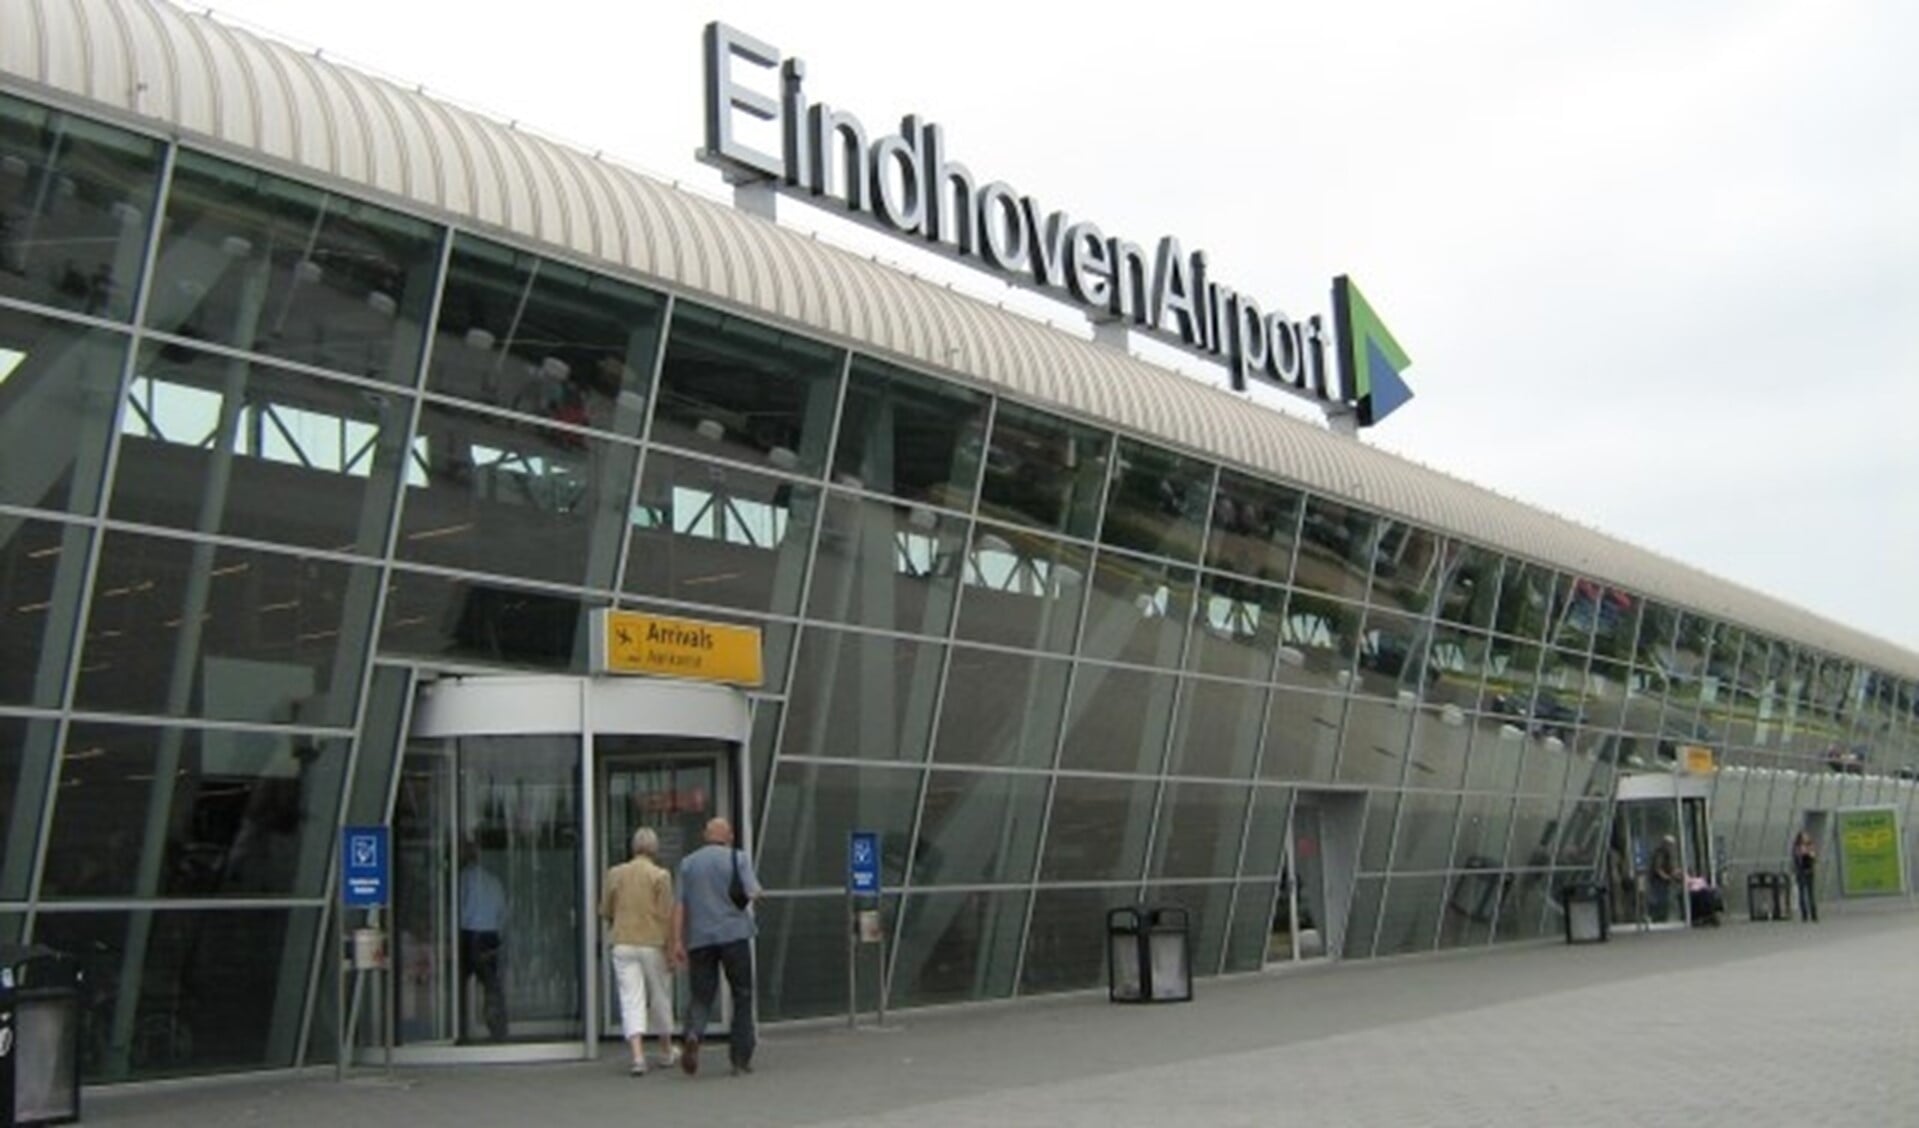 Wat zijn de wenselijke en realistische perspectieven van Airport Eindhoven voor na 2019? FOTO: Hkx